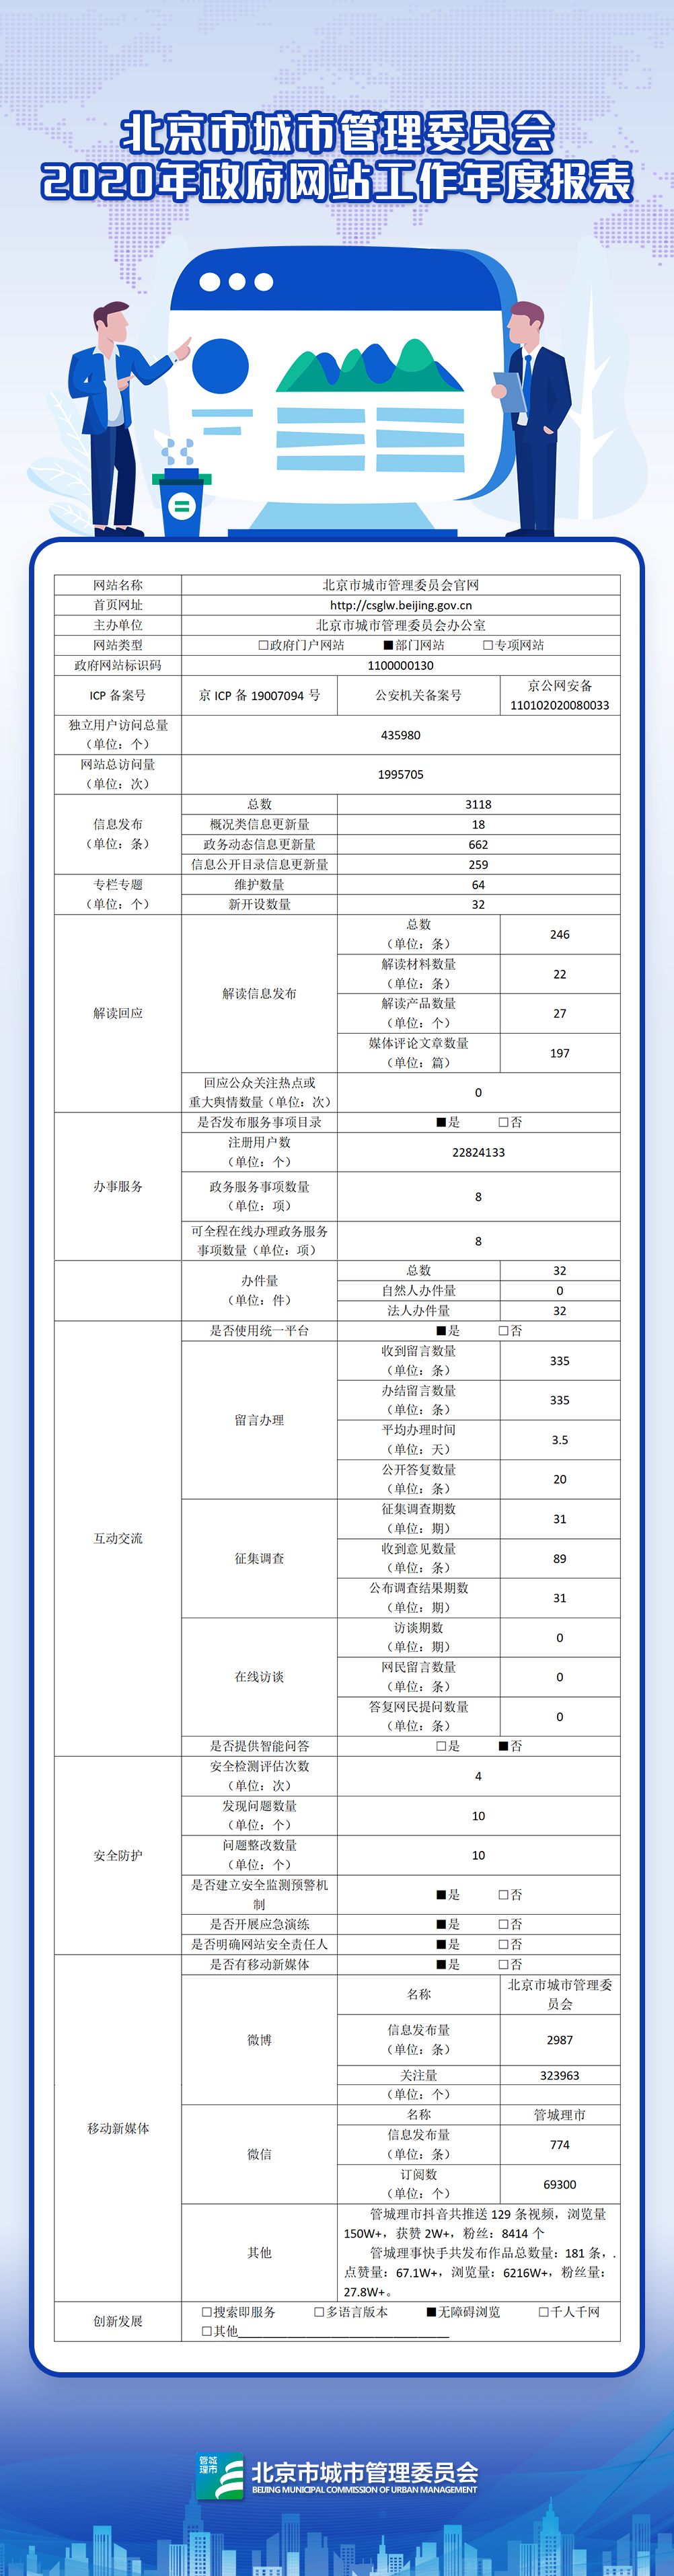 北京市城市管理委员2020年政府网站年度工作报表